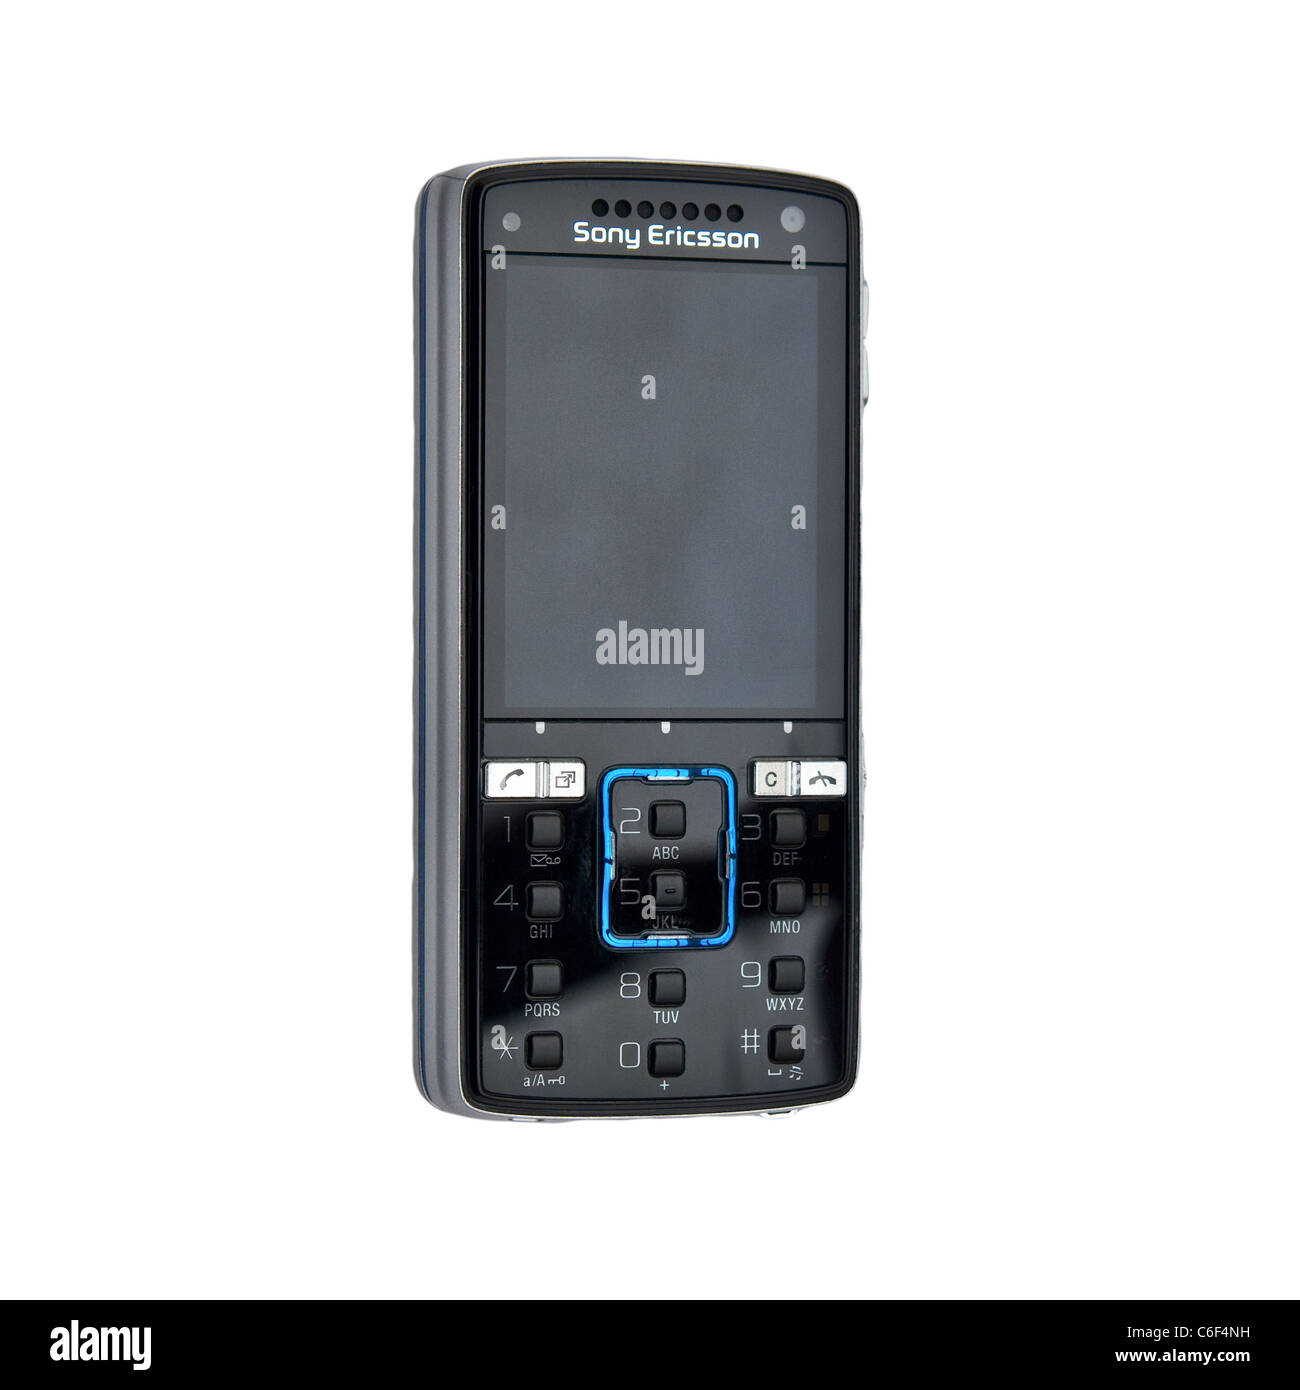 Sony Ericsson Handy ausgeschnitten. Blick von der Vorderseite. Nahaufnahme (Makro) Stockfoto